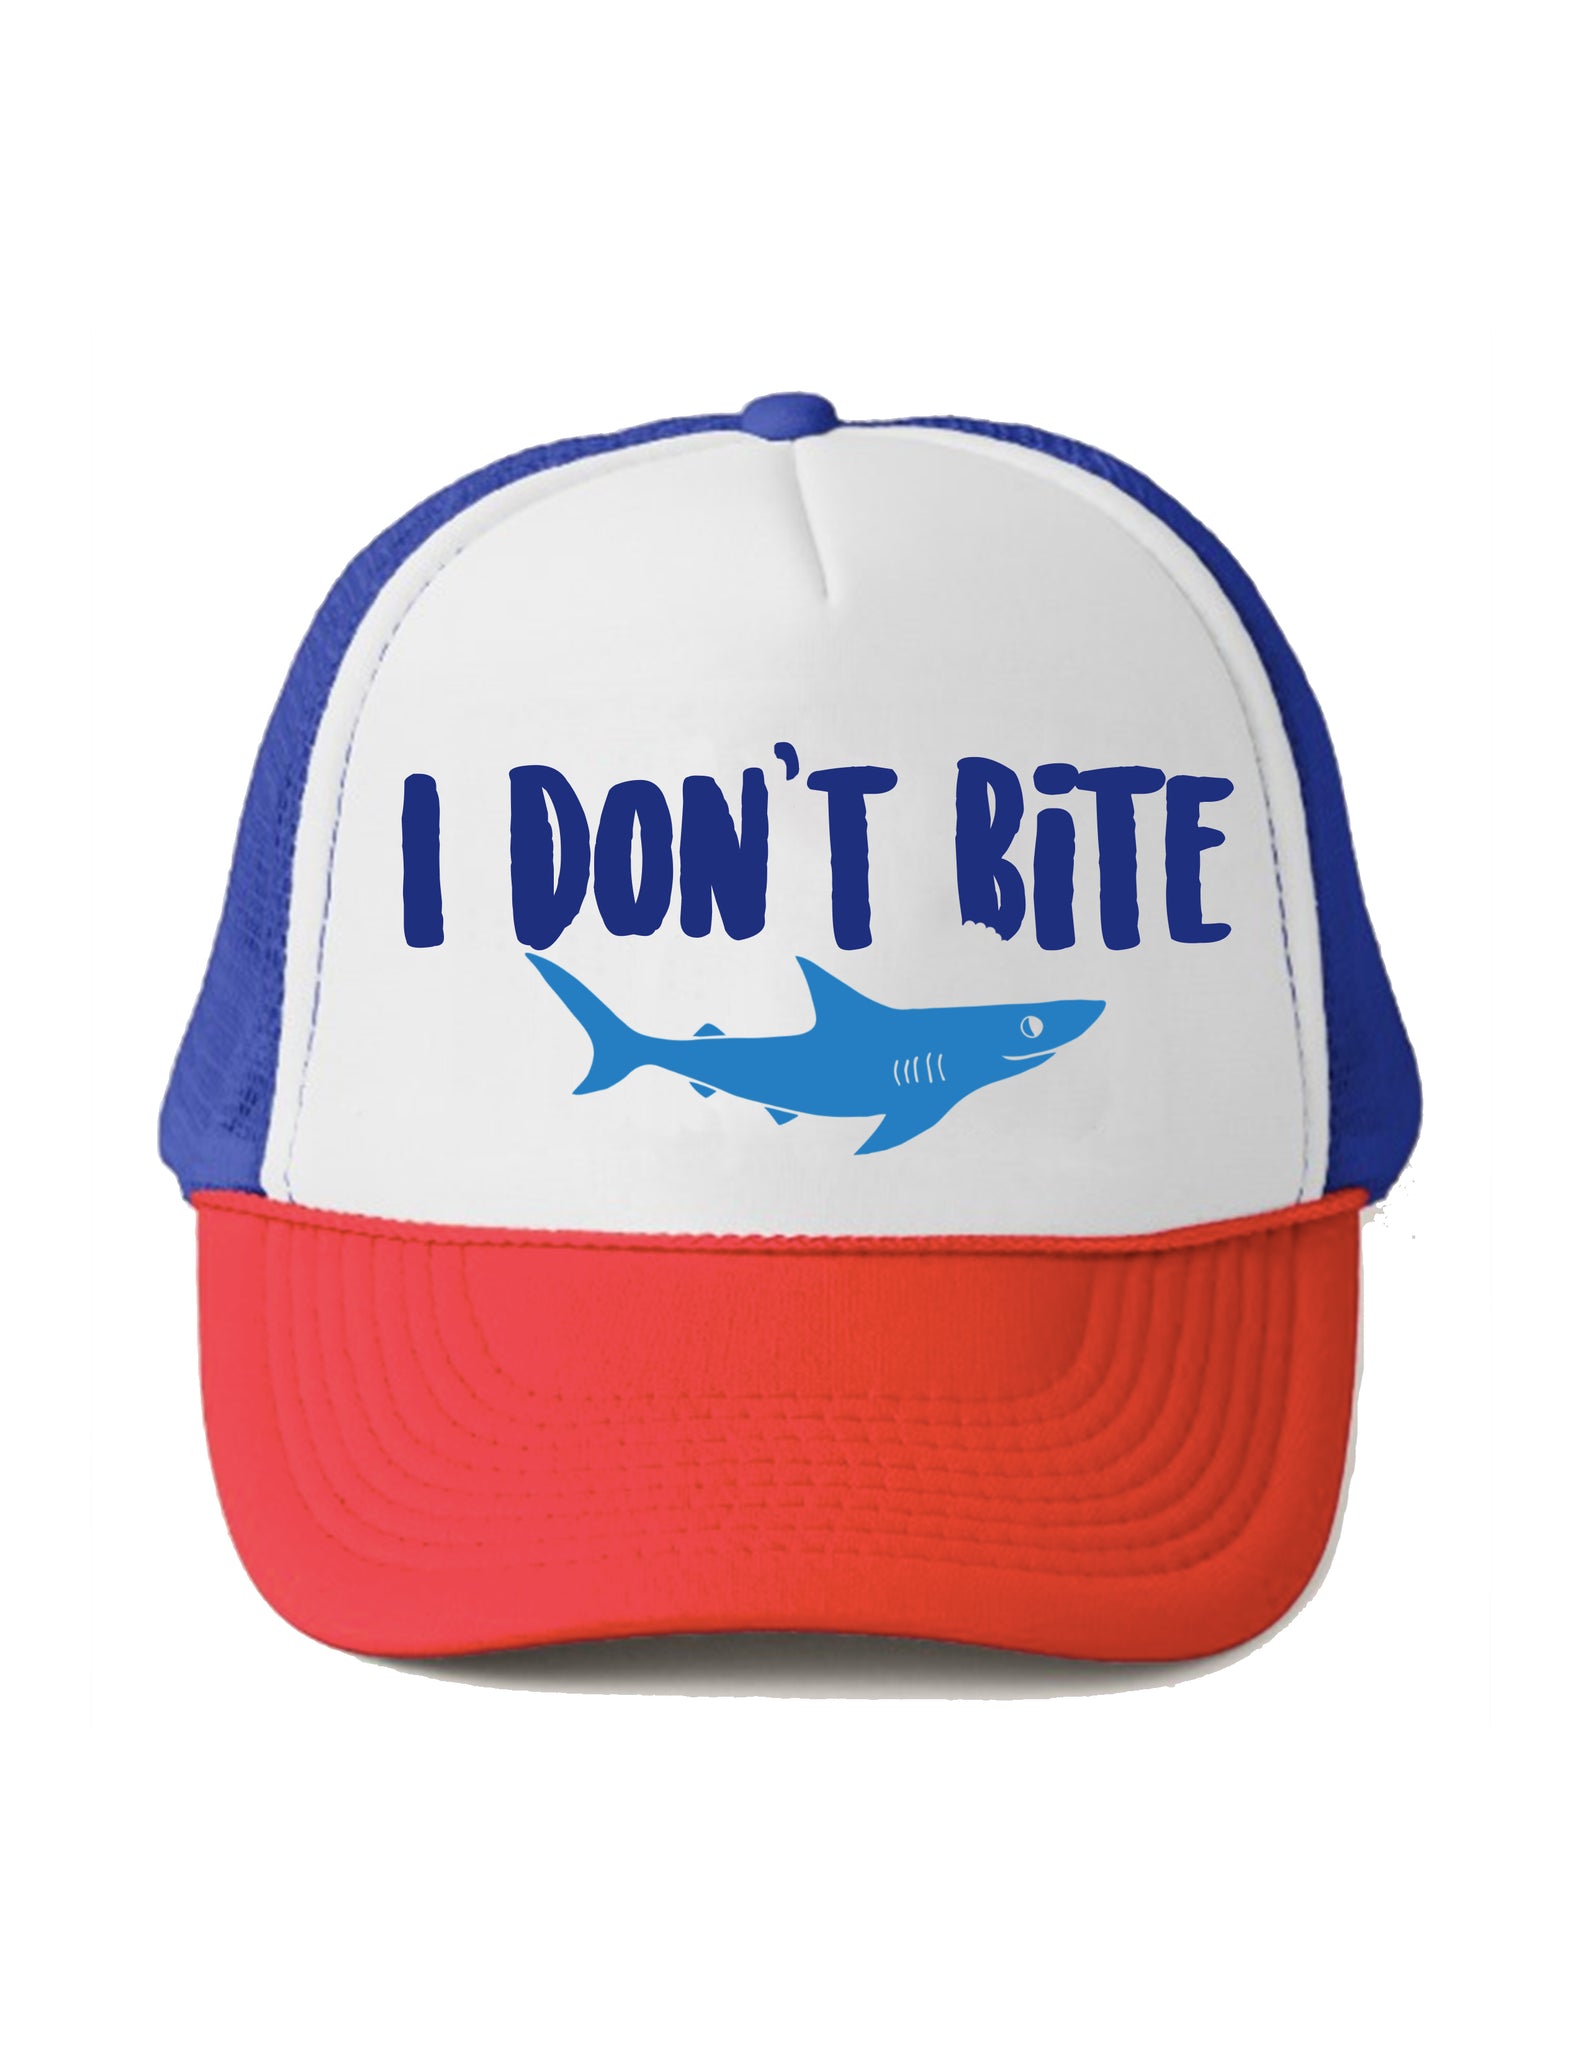 I dont bite hat